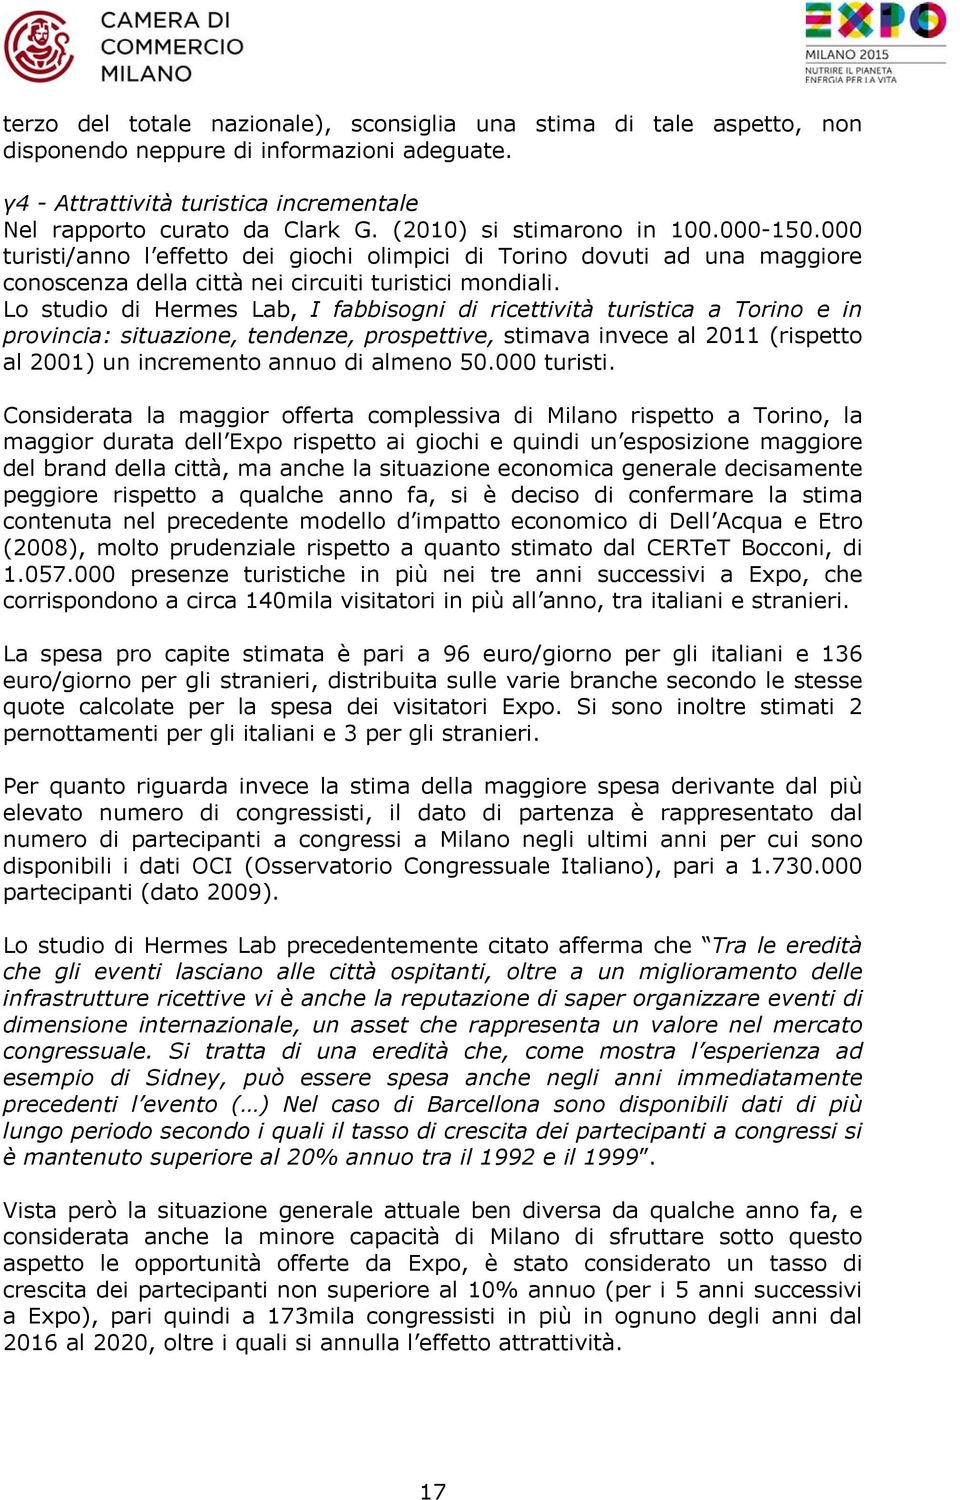 Lo studio di Hermes Lab, I fabbisogni di ricettività turistica a Torino e in provincia: situazione, tendenze, prospettive, stimava invece al 2011 (rispetto al 2001) un incremento annuo di almeno 50.